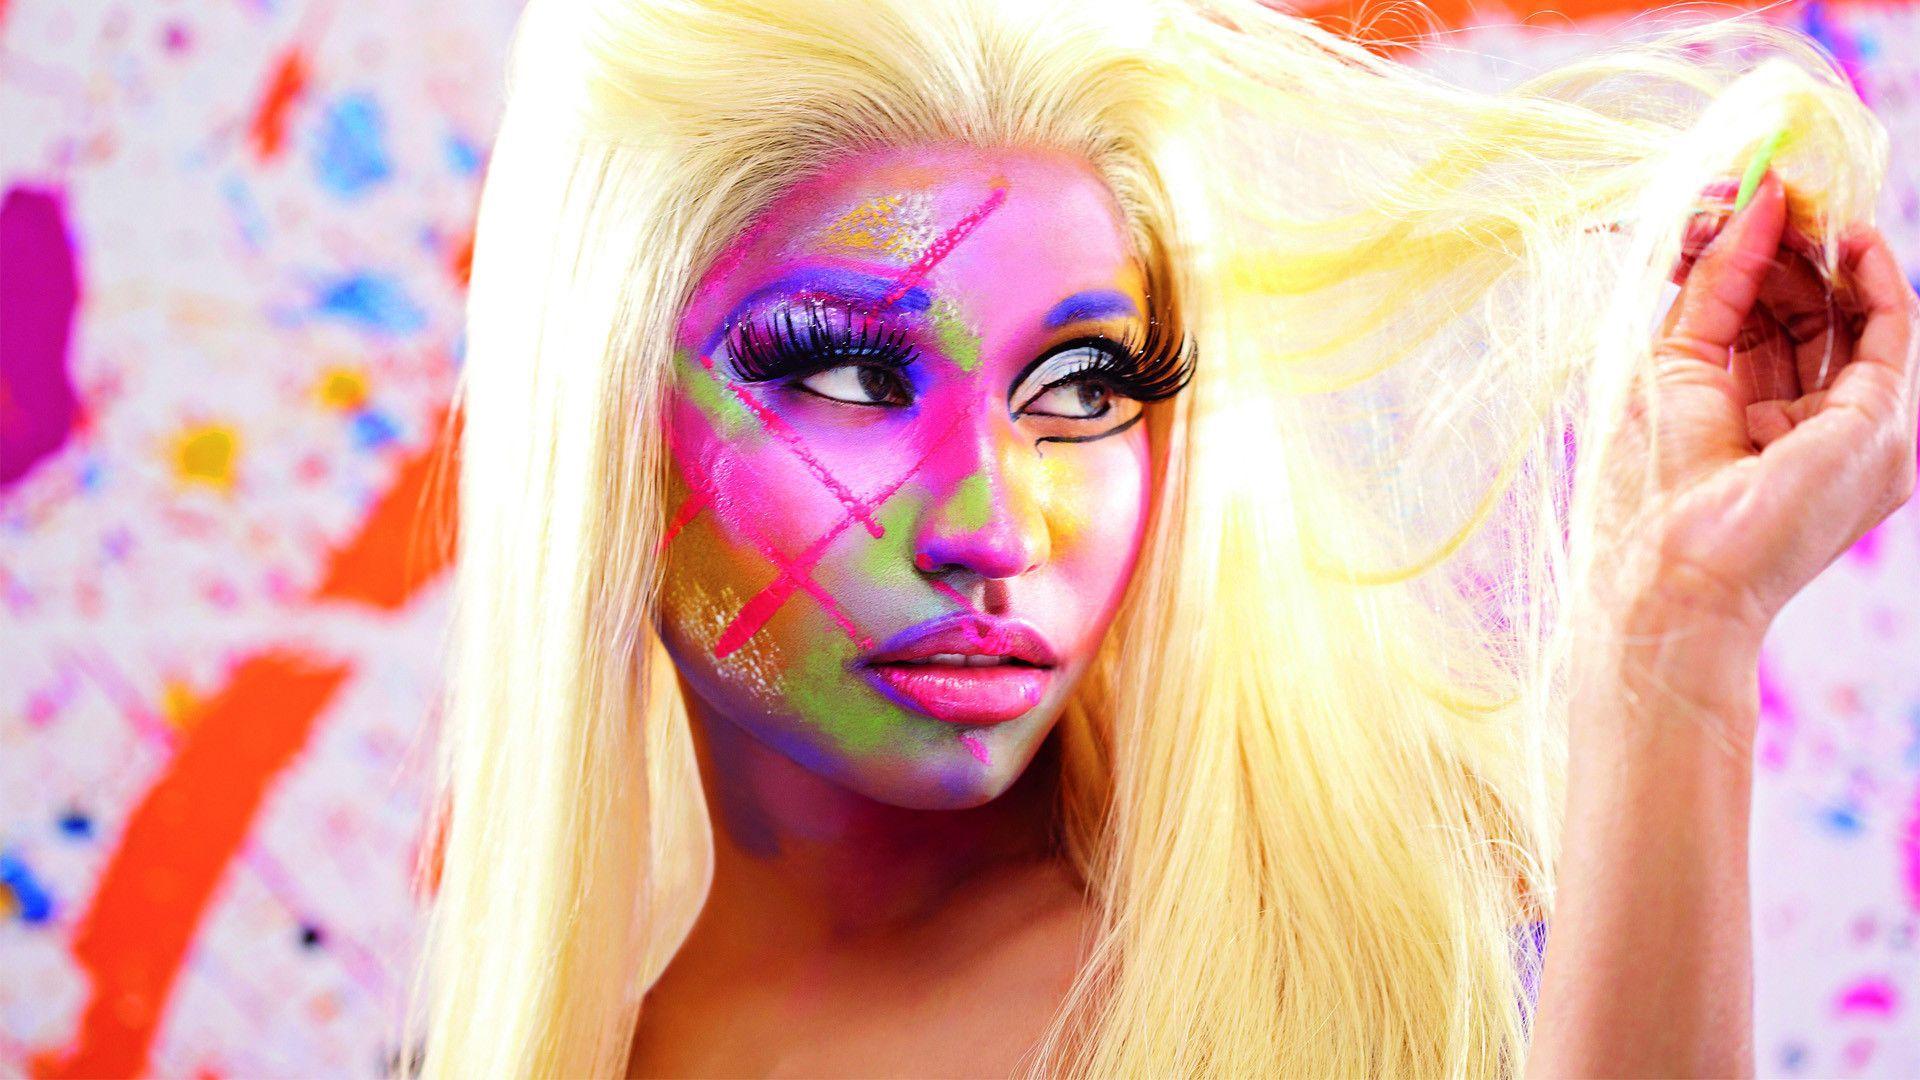 Fonds d&;écran Nicki Minaj, tous les wallpaper Nicki Minaj